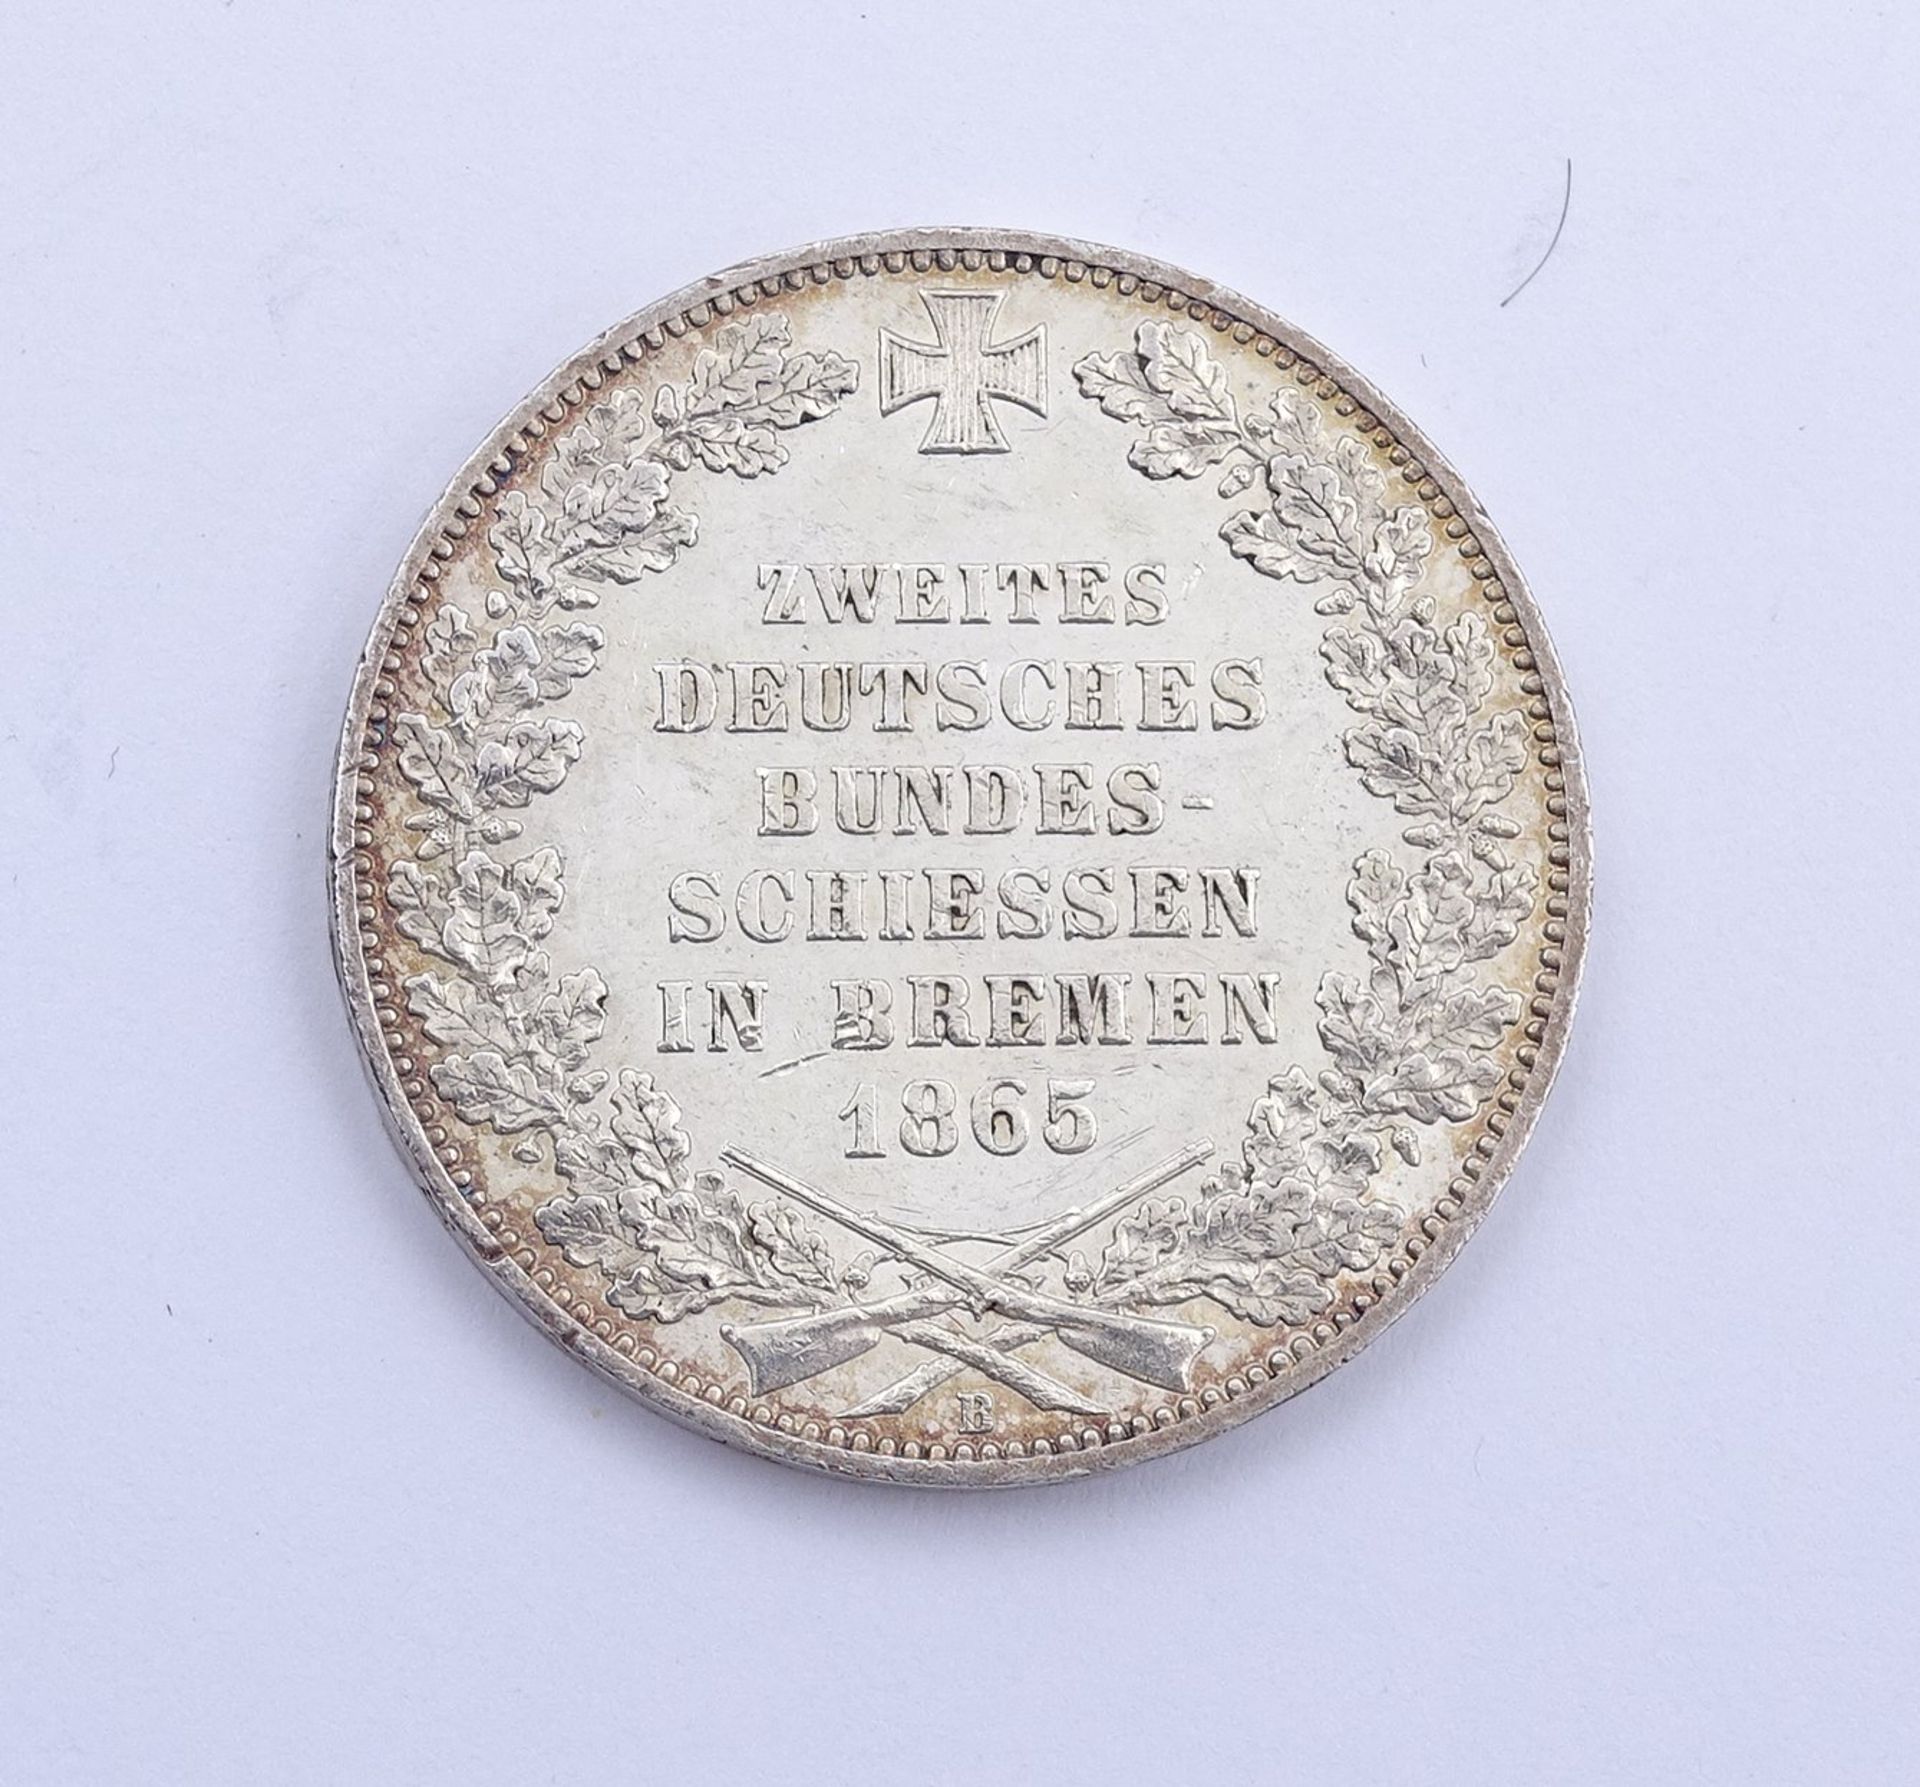 1 Thaler 1865 Freie Hansestadt Bremen - zweites Deutsches Bundes-Schiessen in Bremen 1865, Silber,  - Bild 2 aus 2